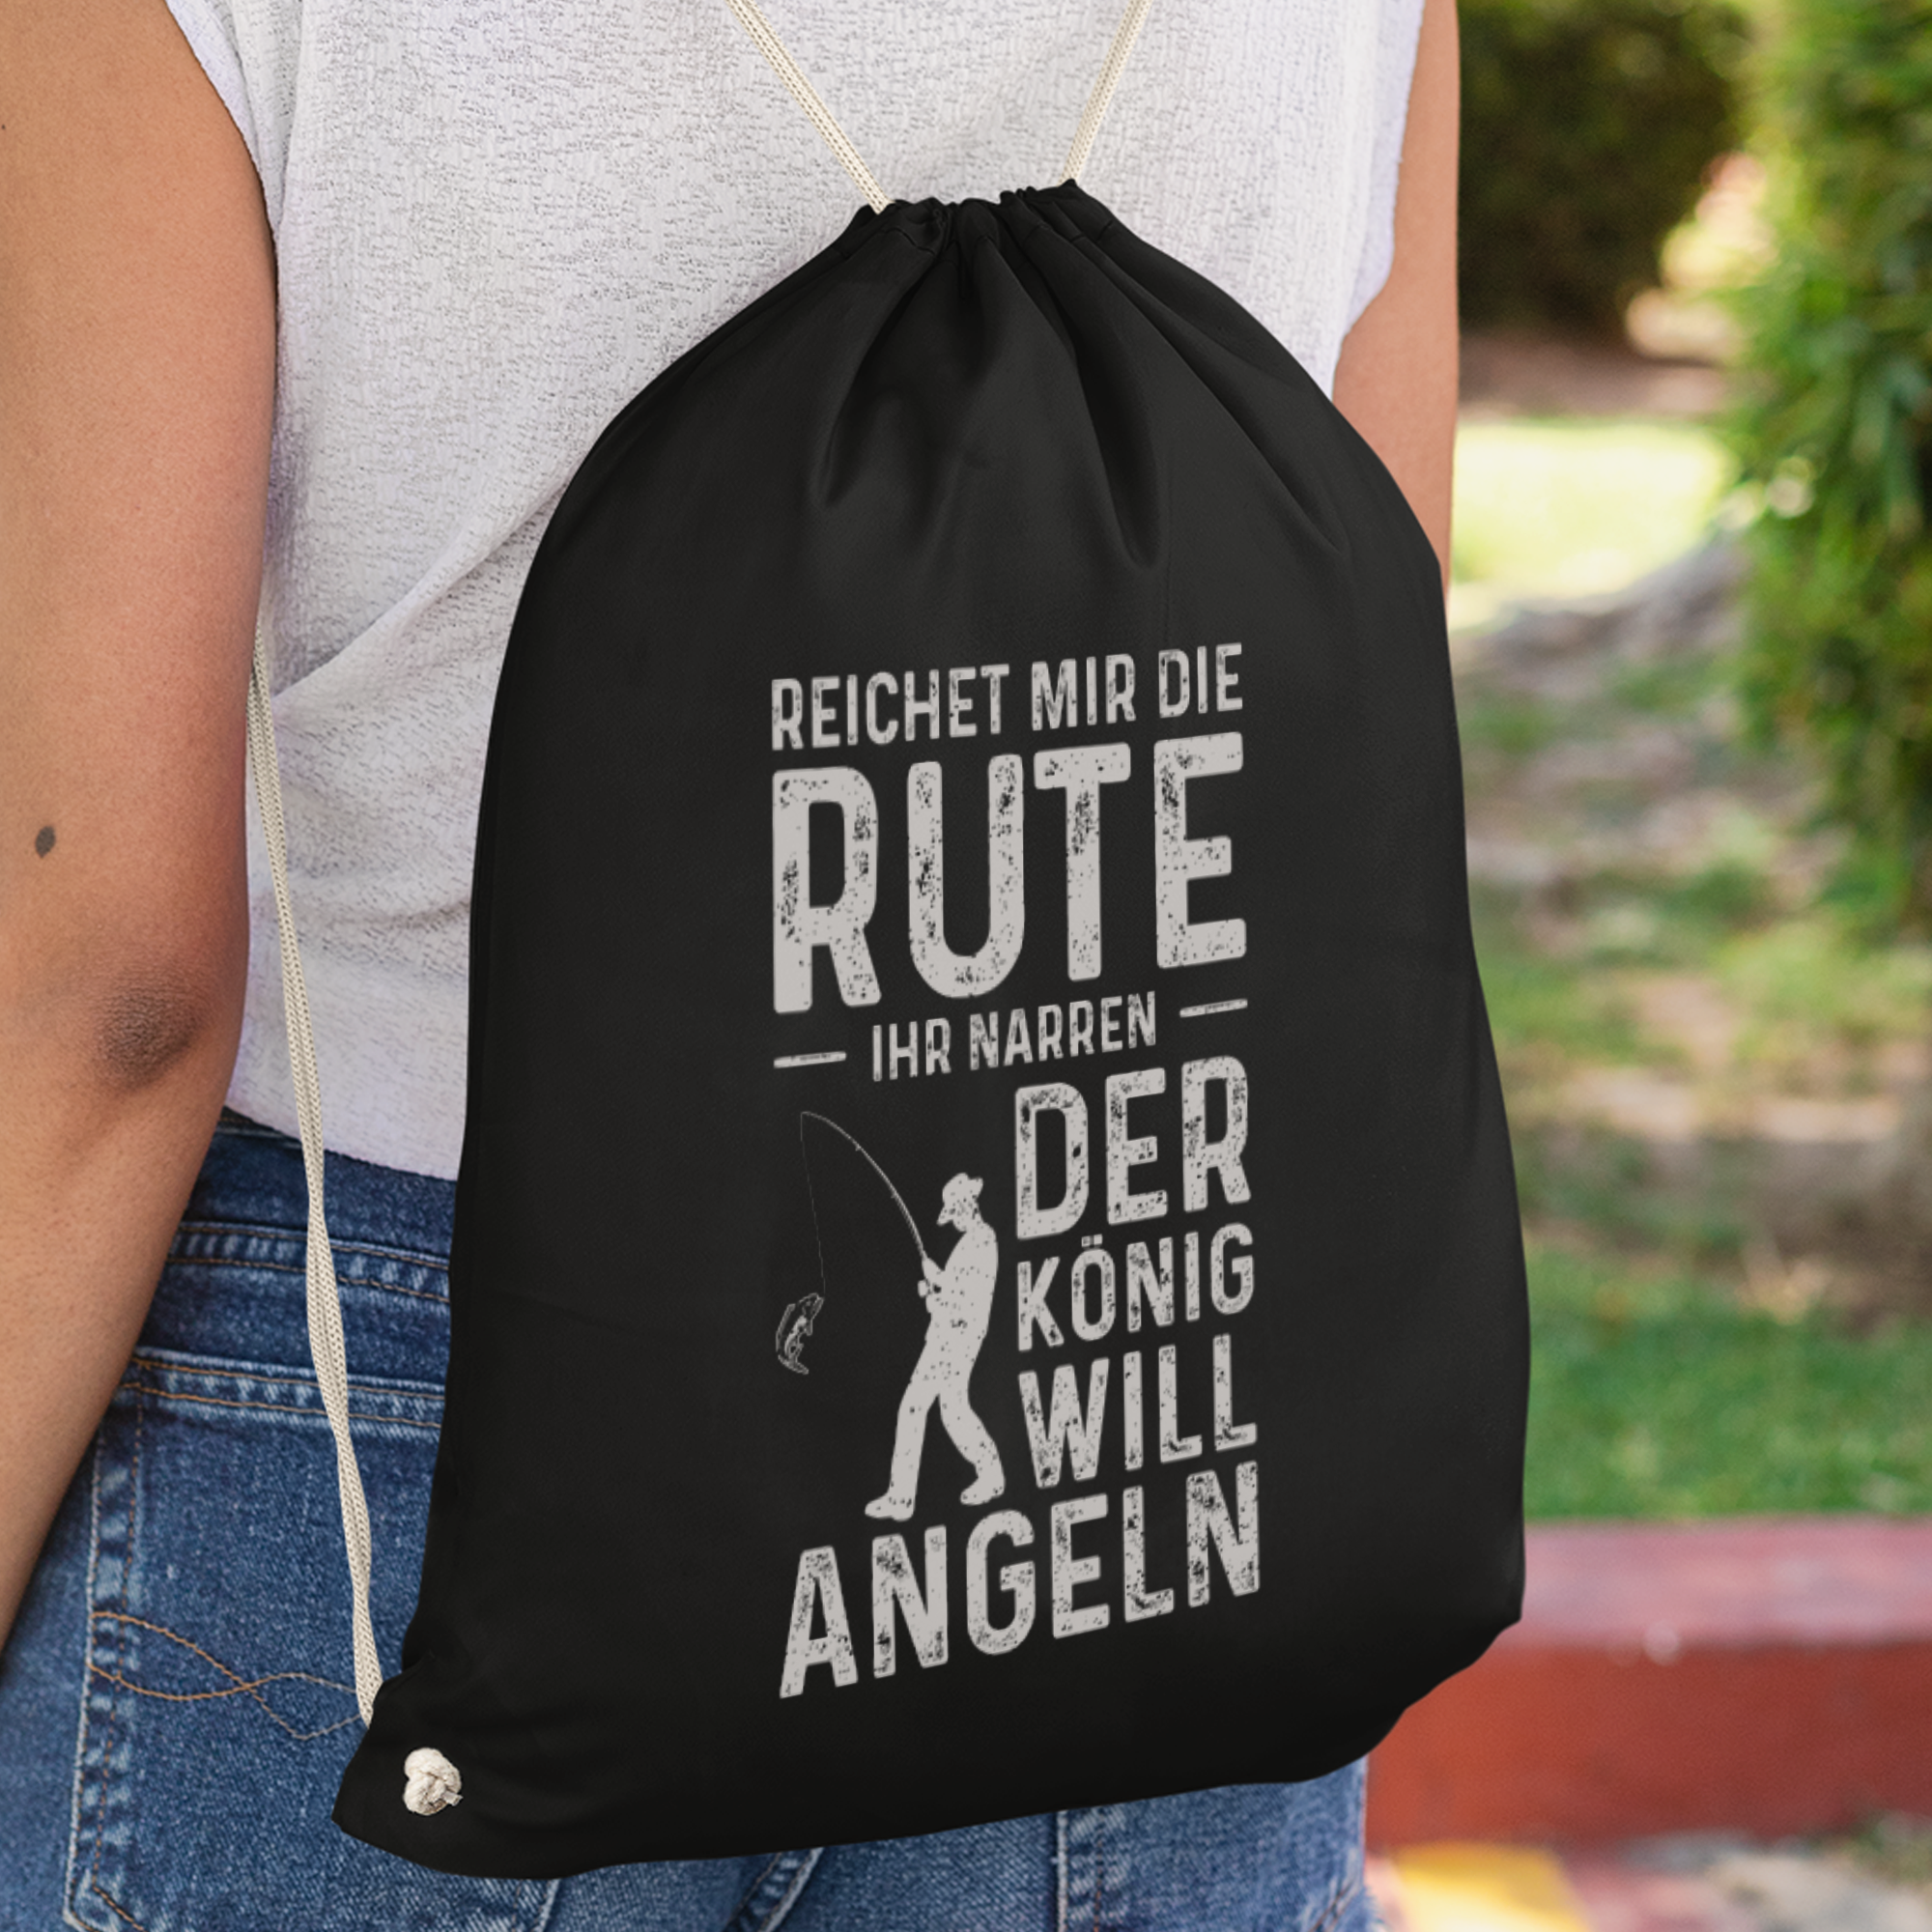 Reichet Mir Die Rute Der König Will Angeln Turnbeutel - DESIGNSBYJNK5.COM